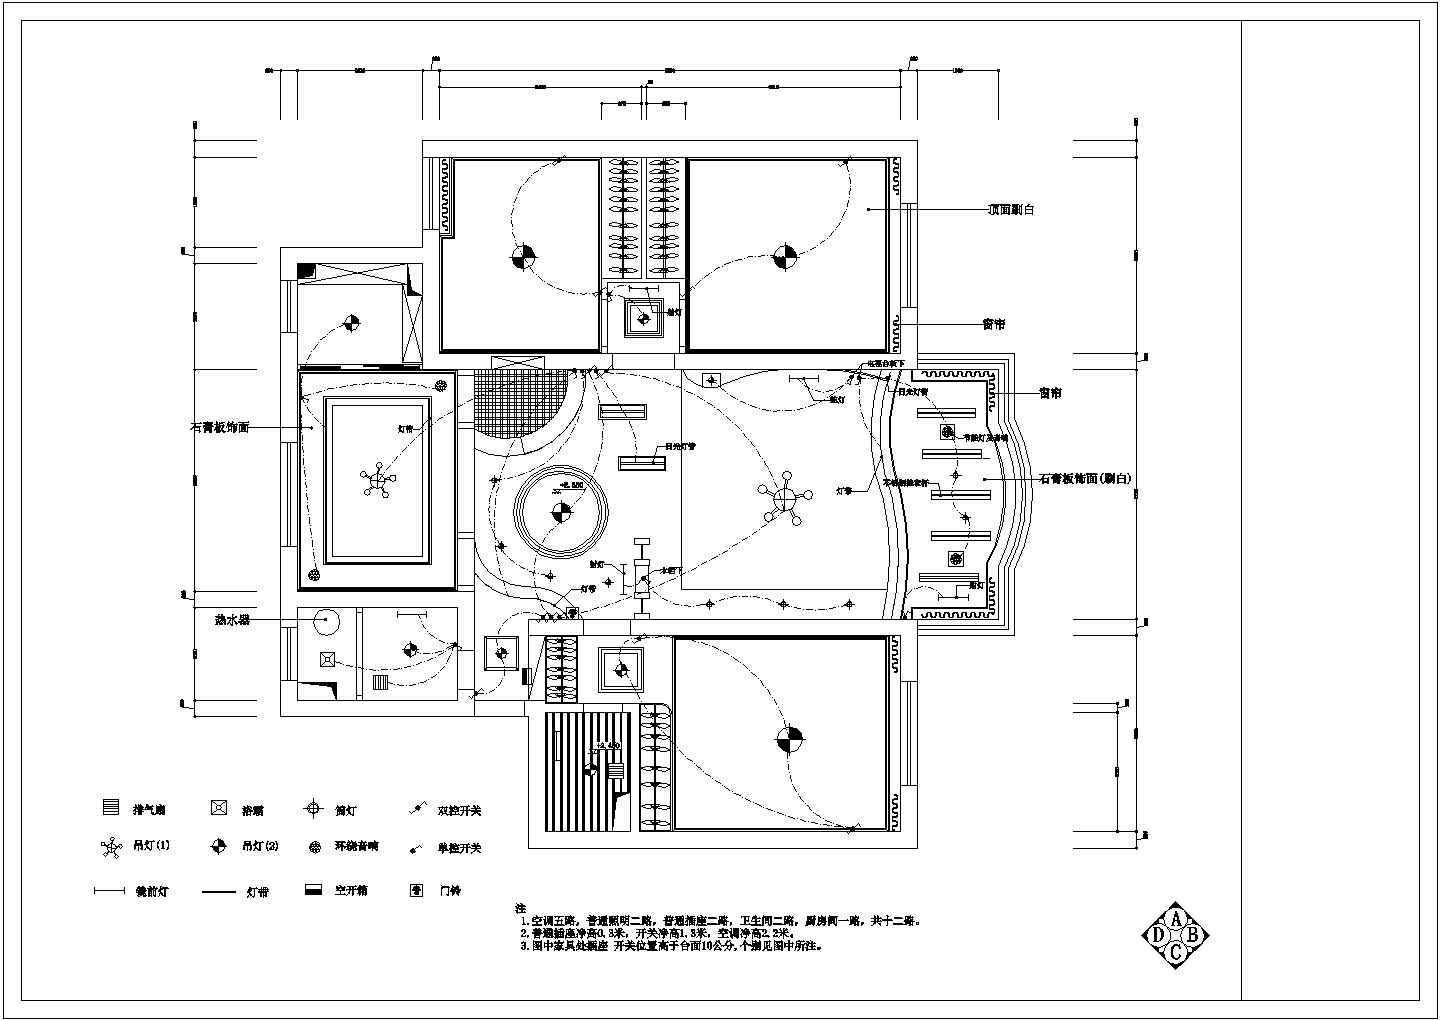 【湖南】某地现代化风格别墅装修设计施工图